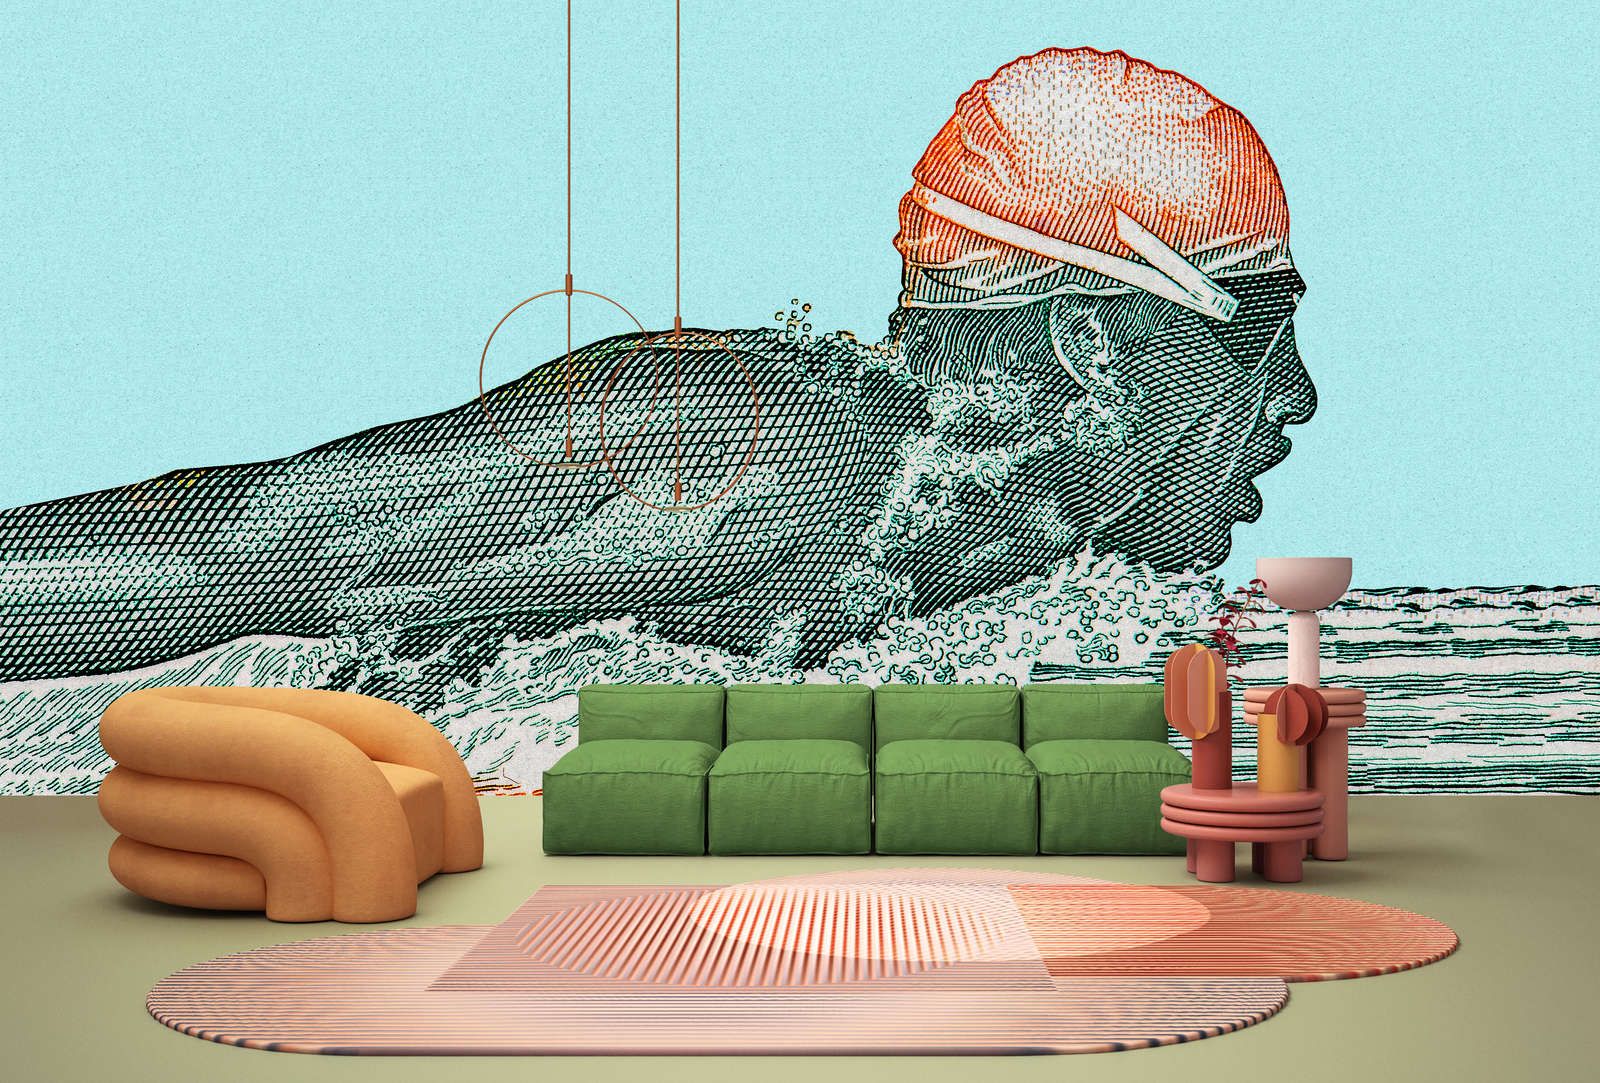             Digital behang »aquaman« - zwemmer in pixelontwerp - petrol met kraftpapiertextuur | Glad, licht glanzend premium vliesdoek
        